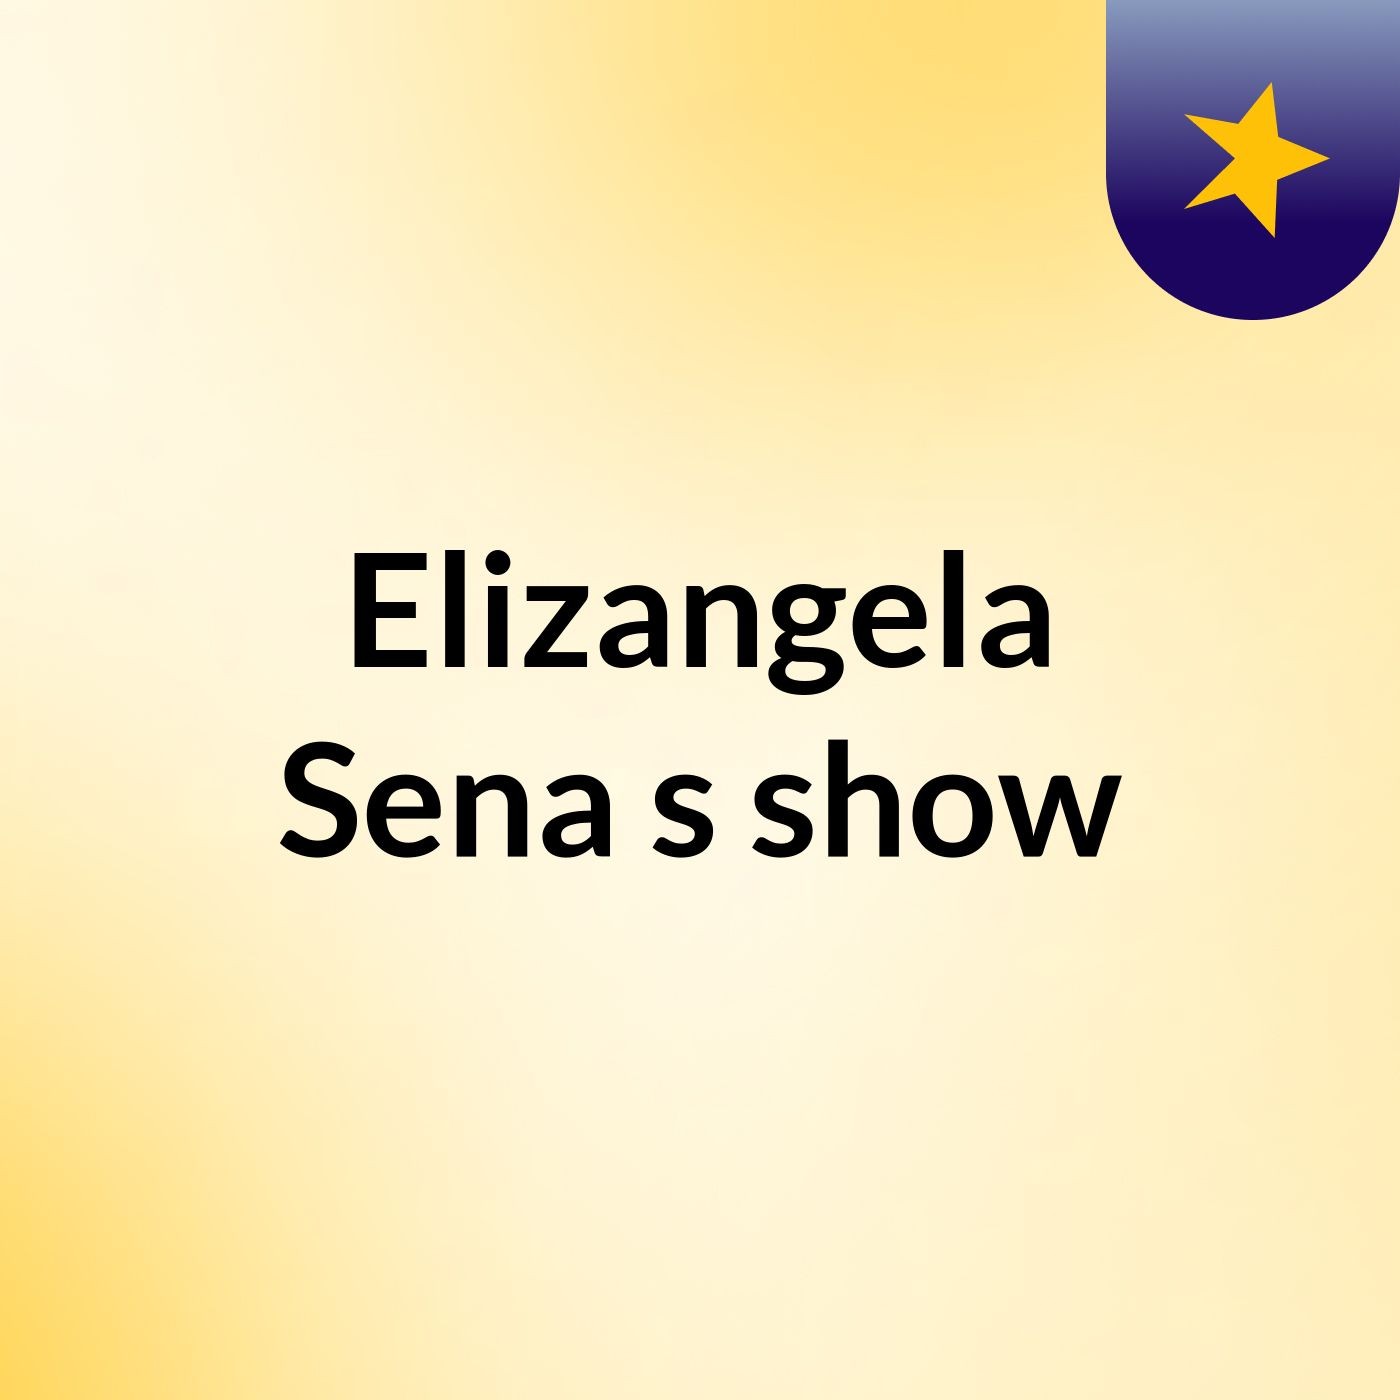 Elizangela Sena's show